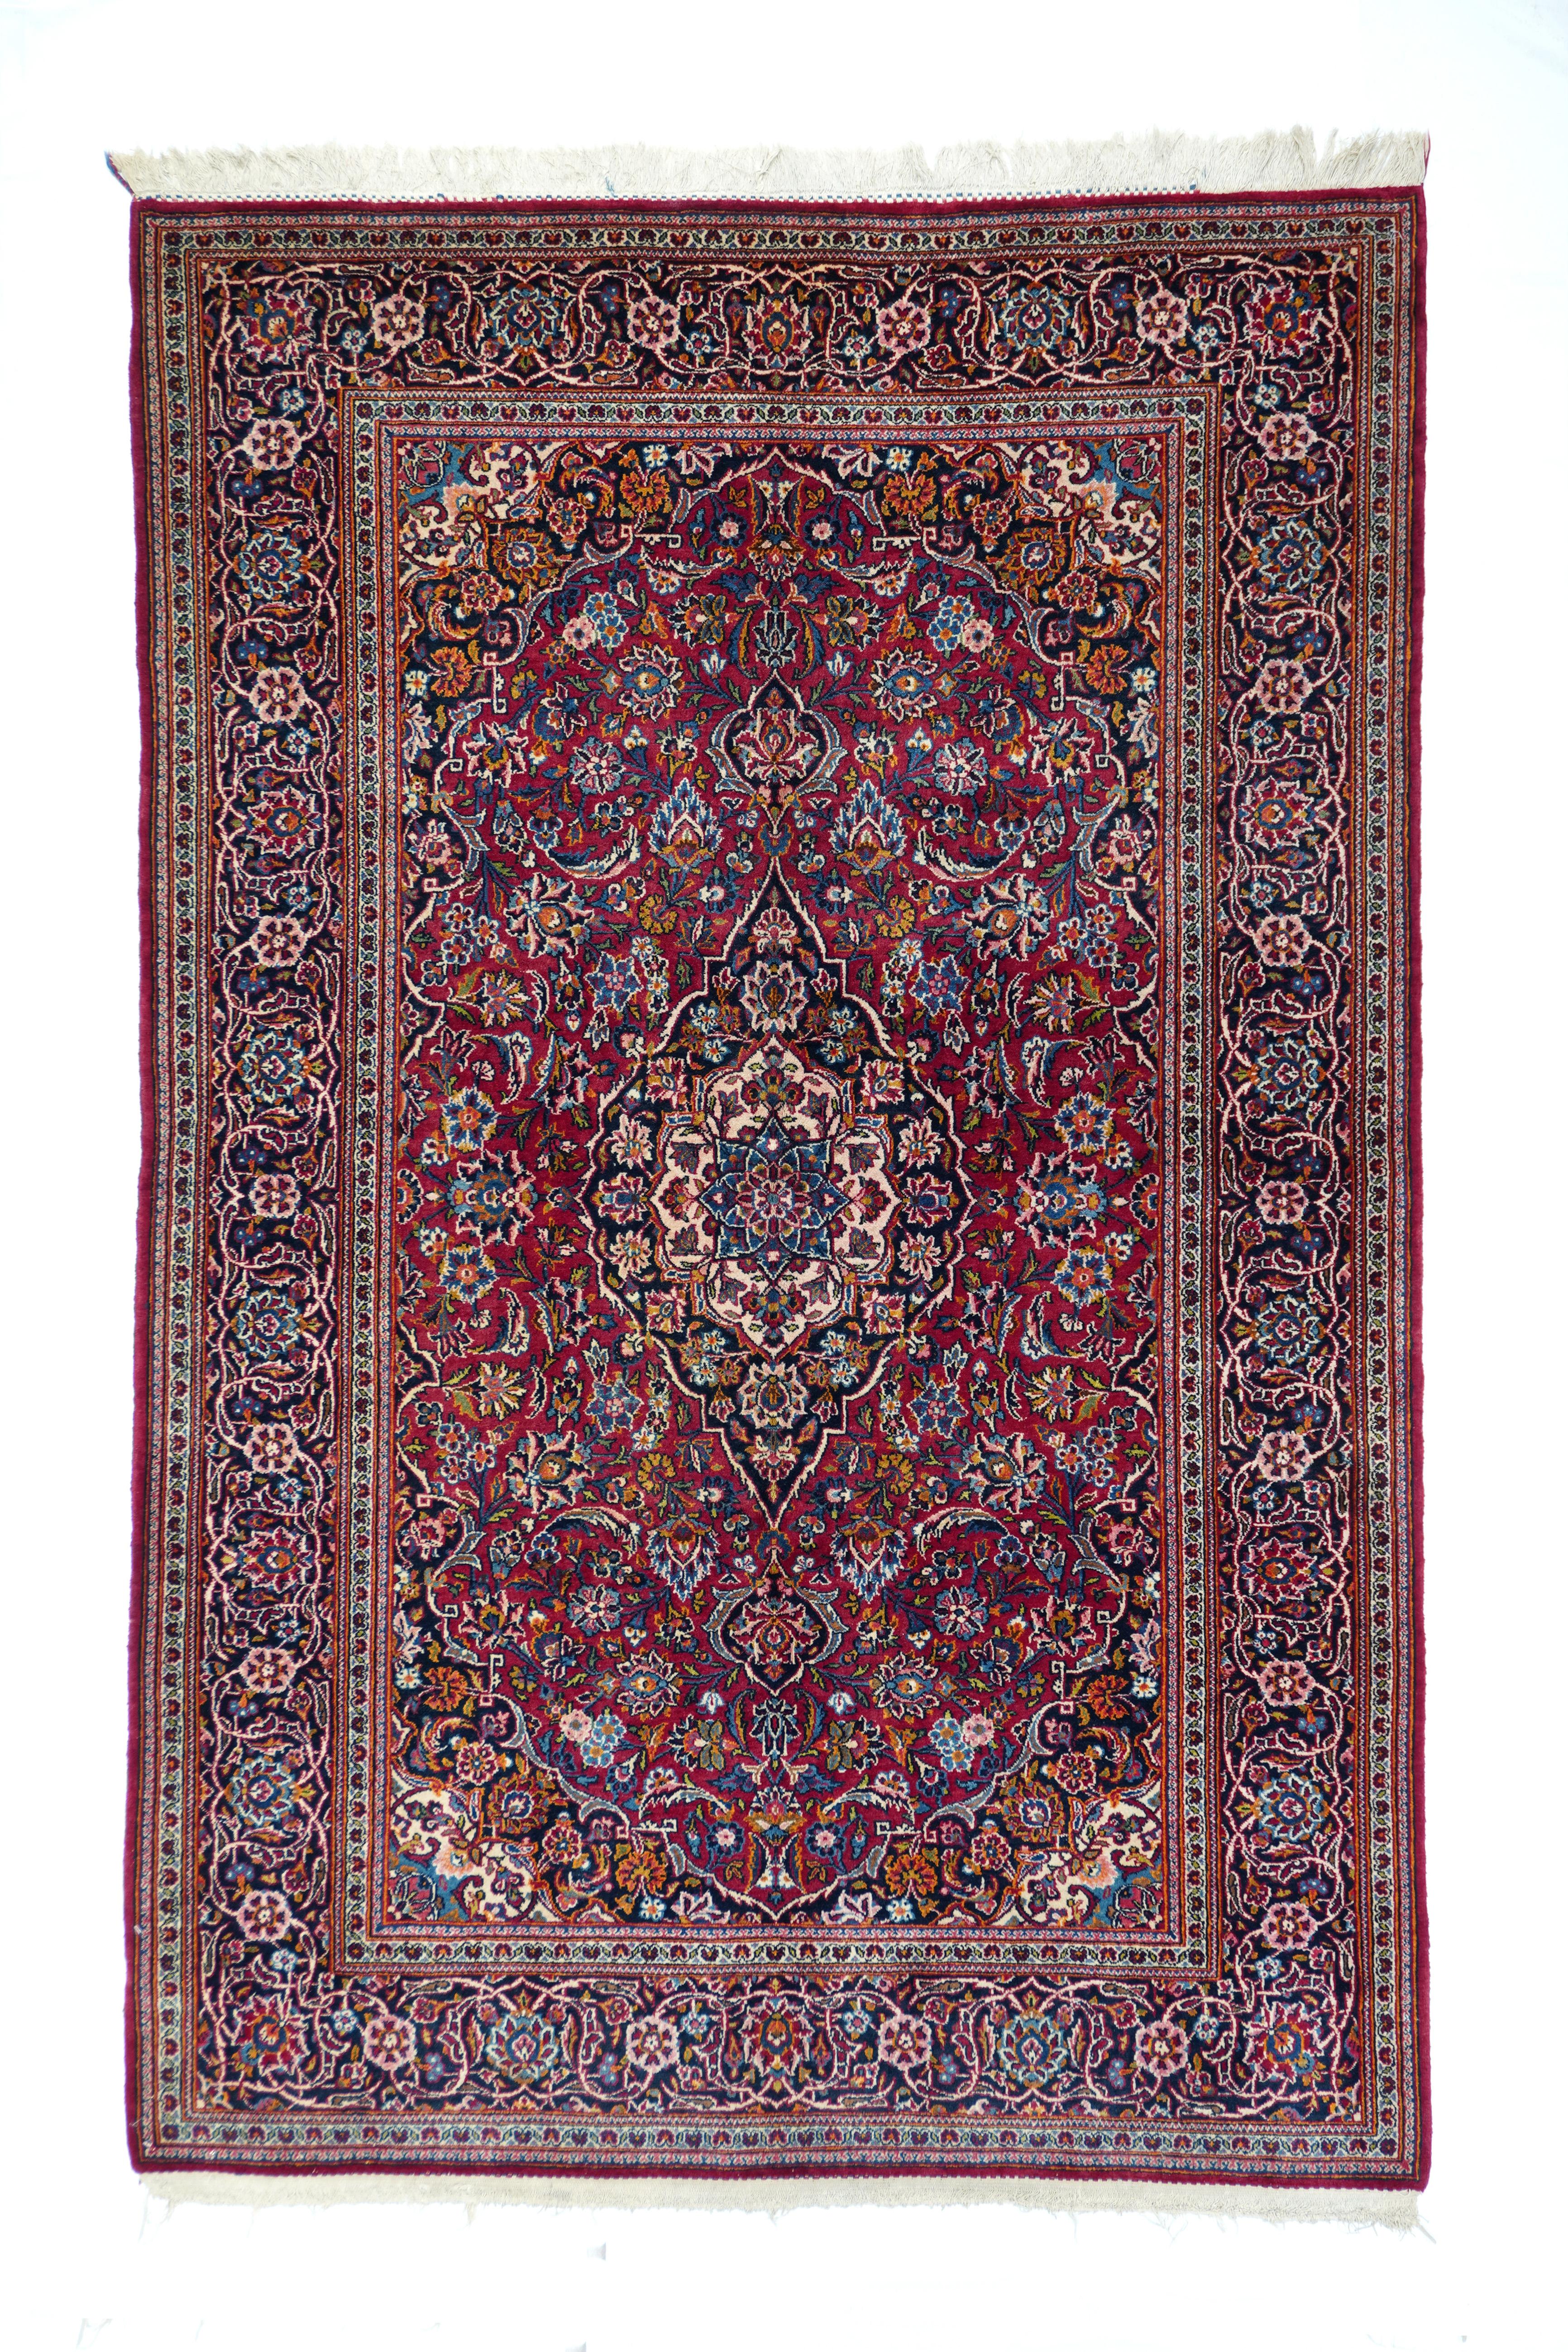 Les tapis anciens de Kashan comptent parmi les plus beaux tapis persans. Ils sont tissés dans les ateliers de la ville de Kashan, dans le centre-nord de l'Iran. Kashan était un centre de production de soie depuis la dynastie safavide, et a créé